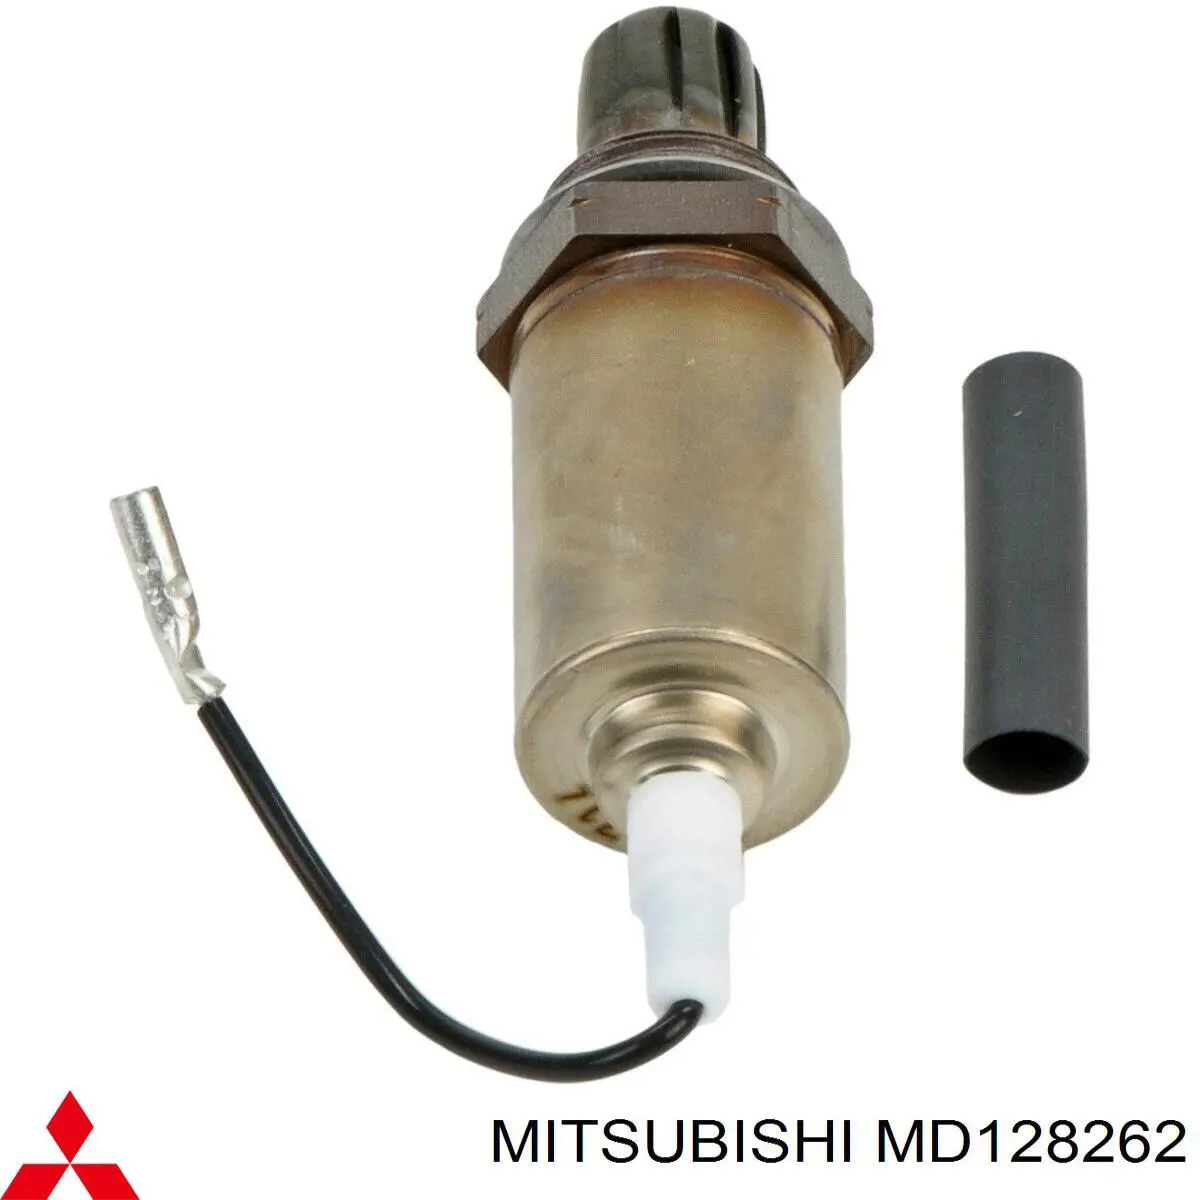 MD110492 Mitsubishi 